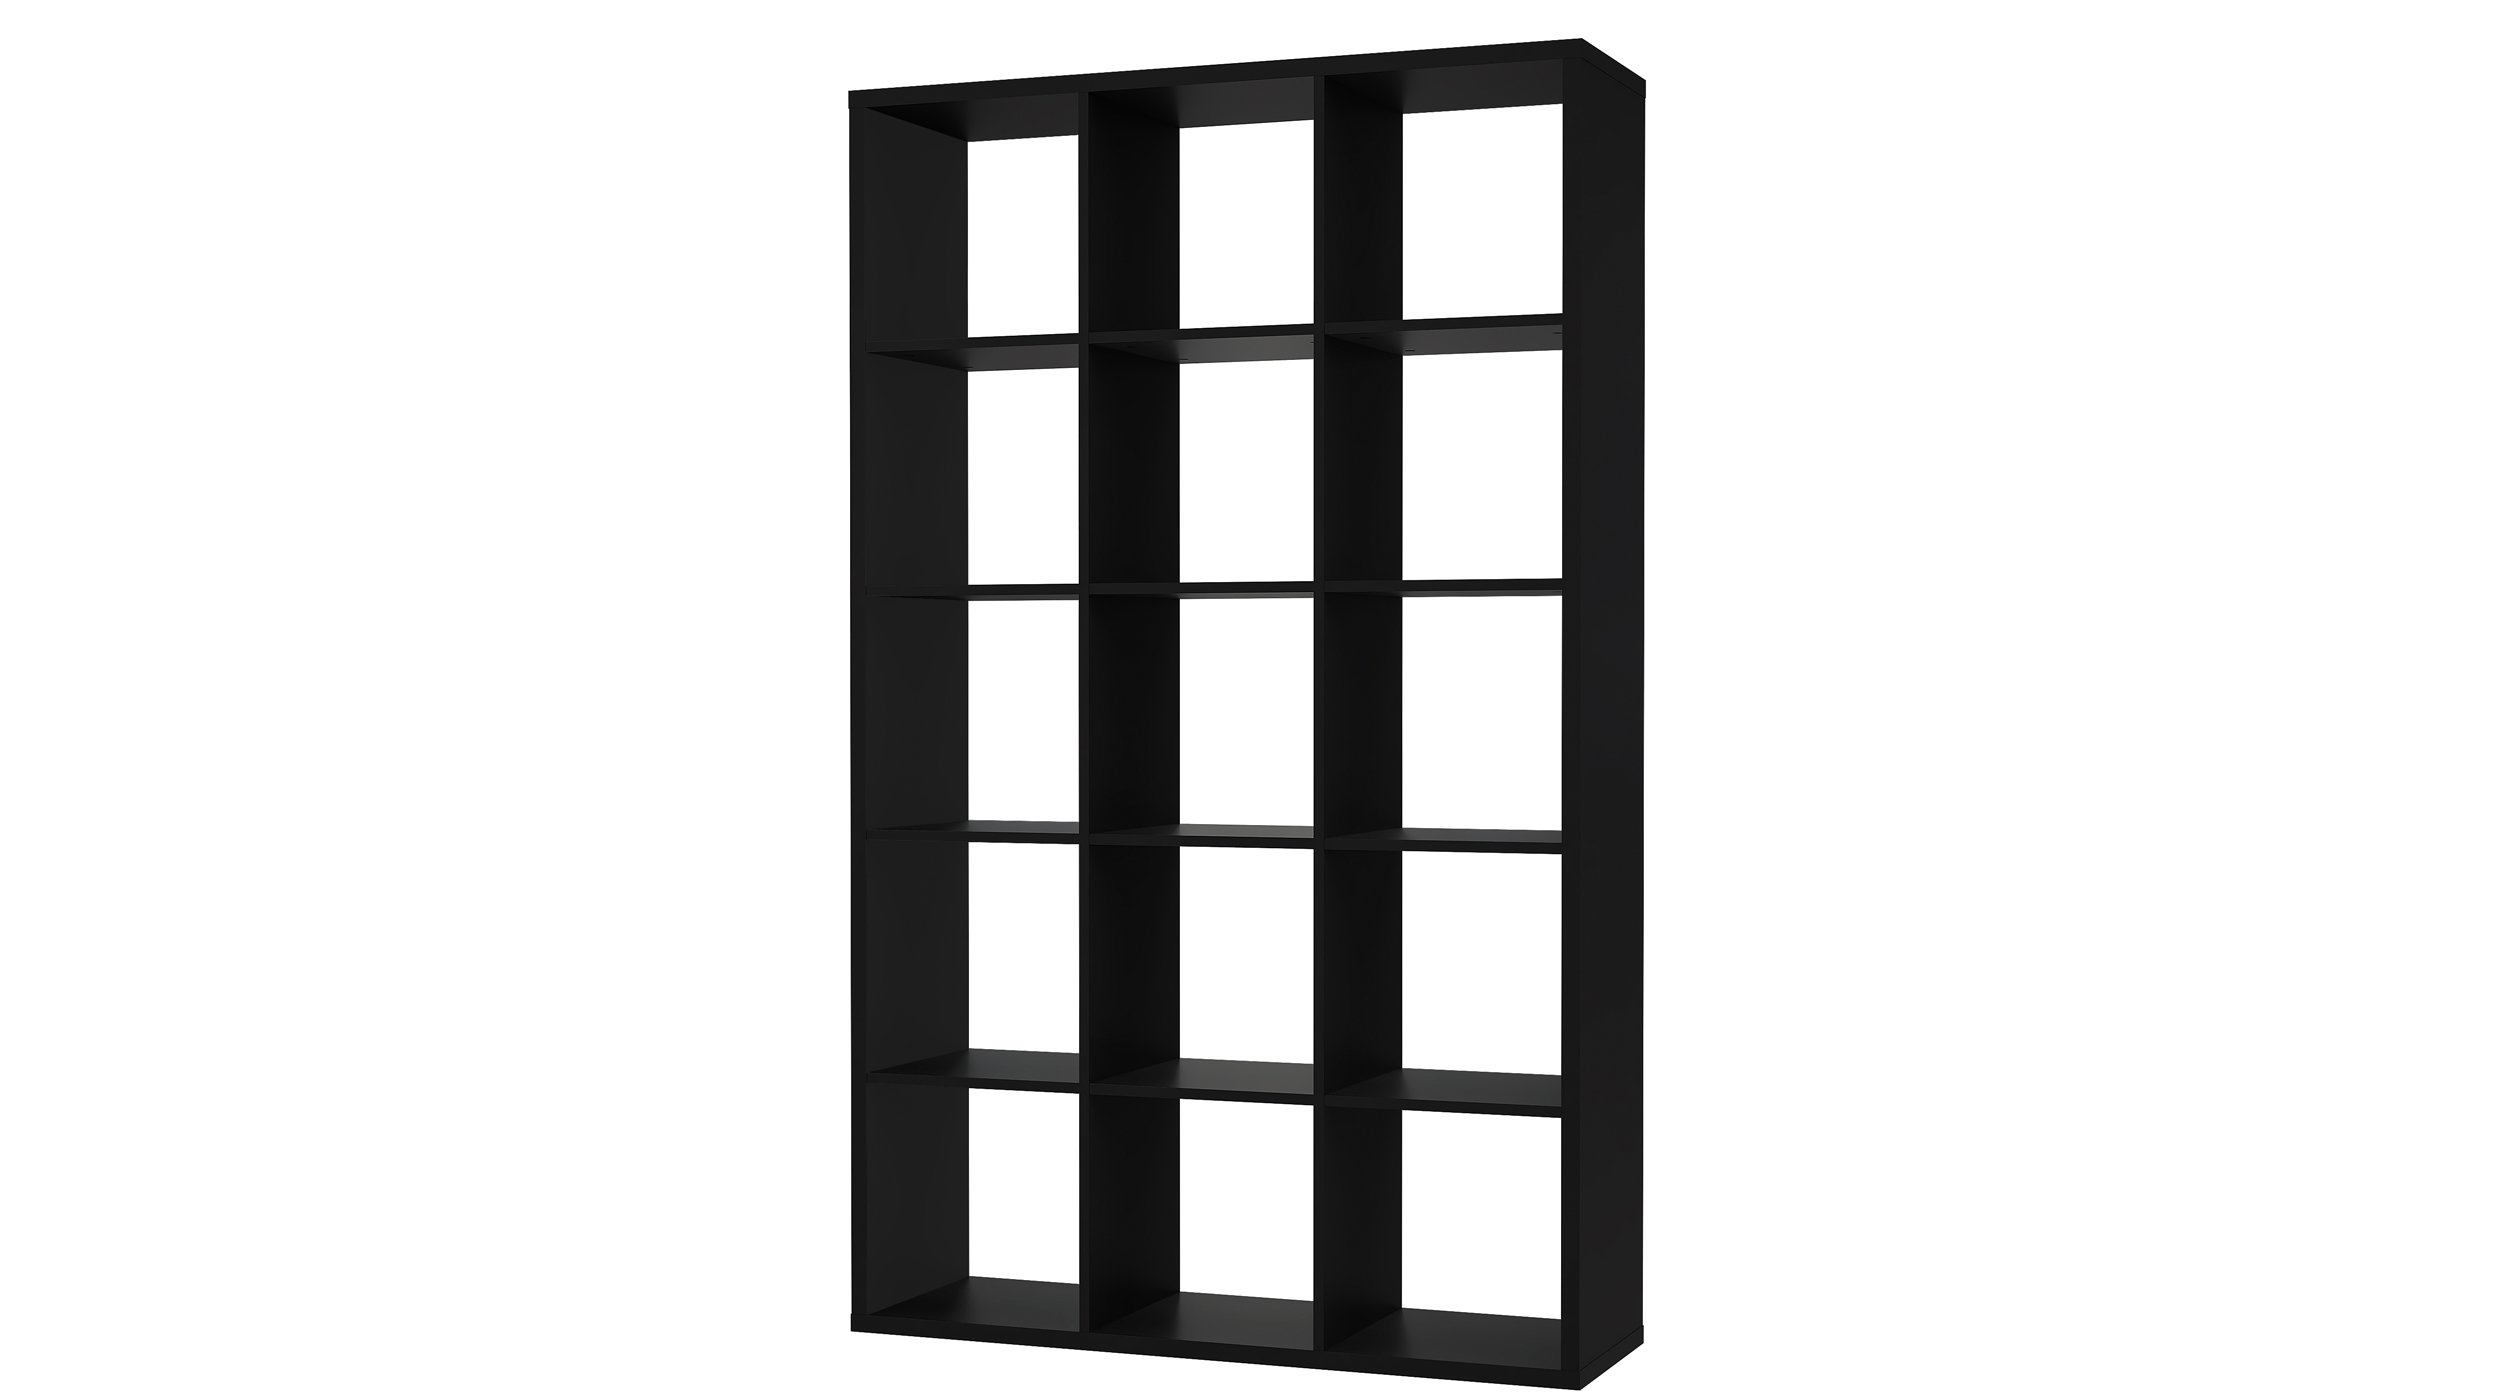 Raumteiler Regal schwarz 107 x 176 cm - 15 Fächer - MAURO